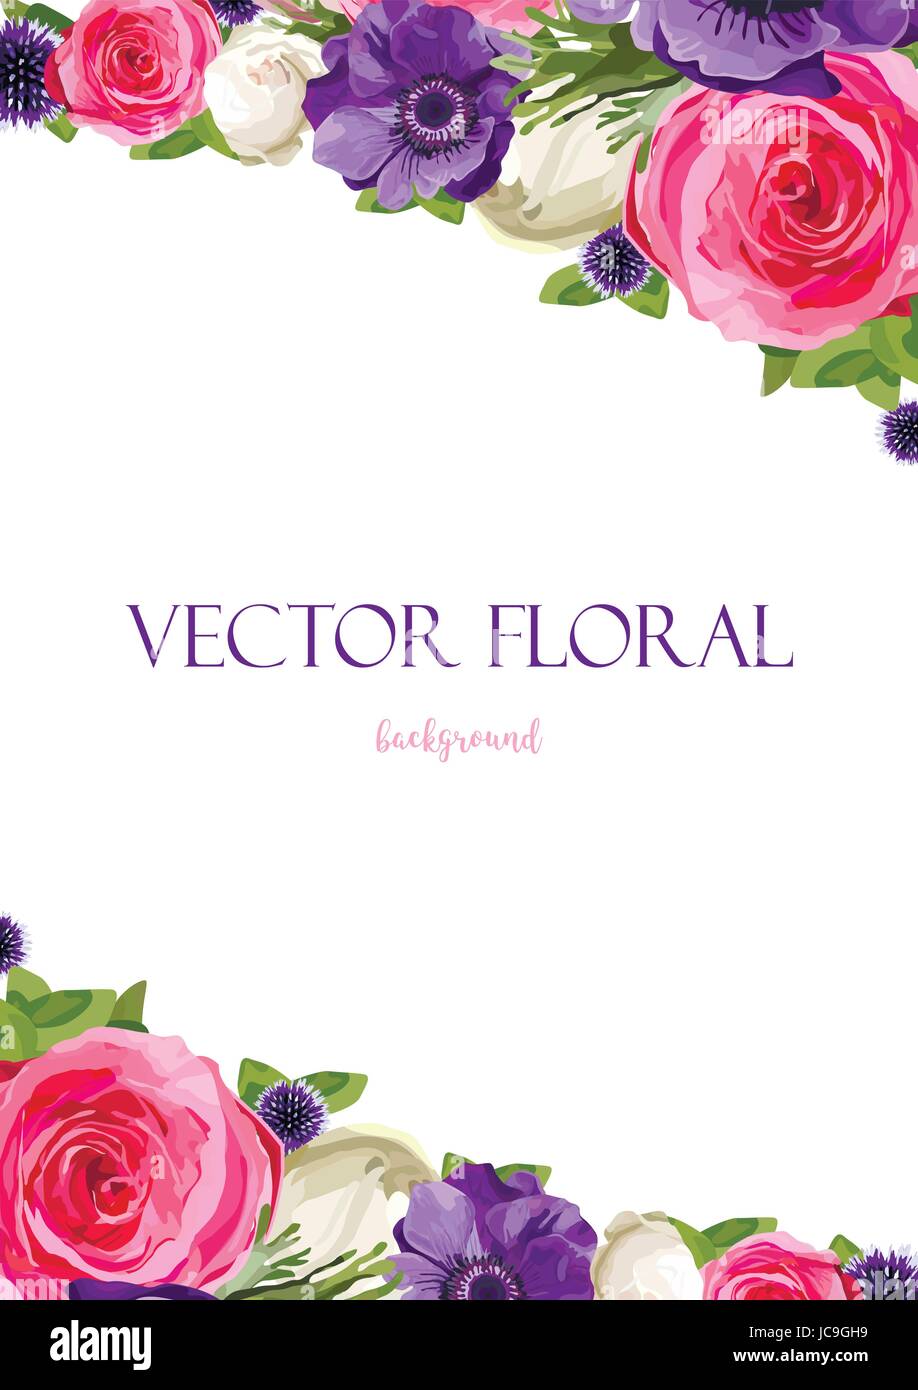 Blume Blumen hell rosa Rose Anemone Distel lässt schöne schöne Spring Summer Bouquet Vektor-Illustration. Ansicht von oben senkrecht elegante Aquarell Stock Vektor